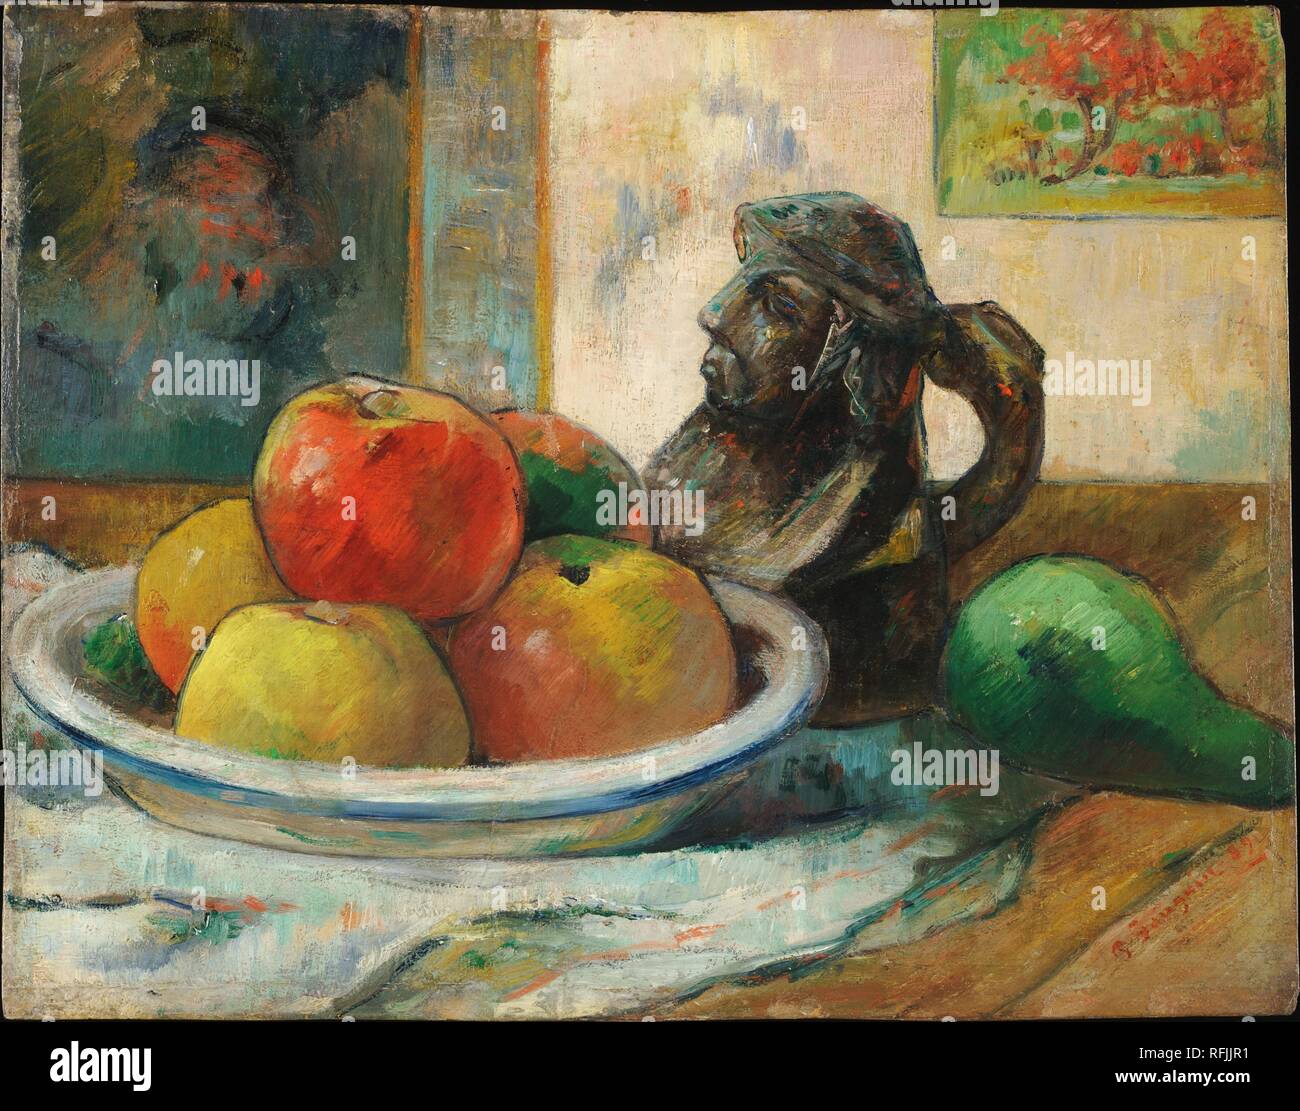 Pommes, poire et céramique / Nature morte avec pommes, une poire et un portrait en céramique pichet. Date/période : 1889. La peinture. Huile sur toile. Hauteur : 28,6 cm (11.2 in) ; Largeur : 36,2 cm (14.2 in). Auteur : Paul Gauguin. Banque D'Images